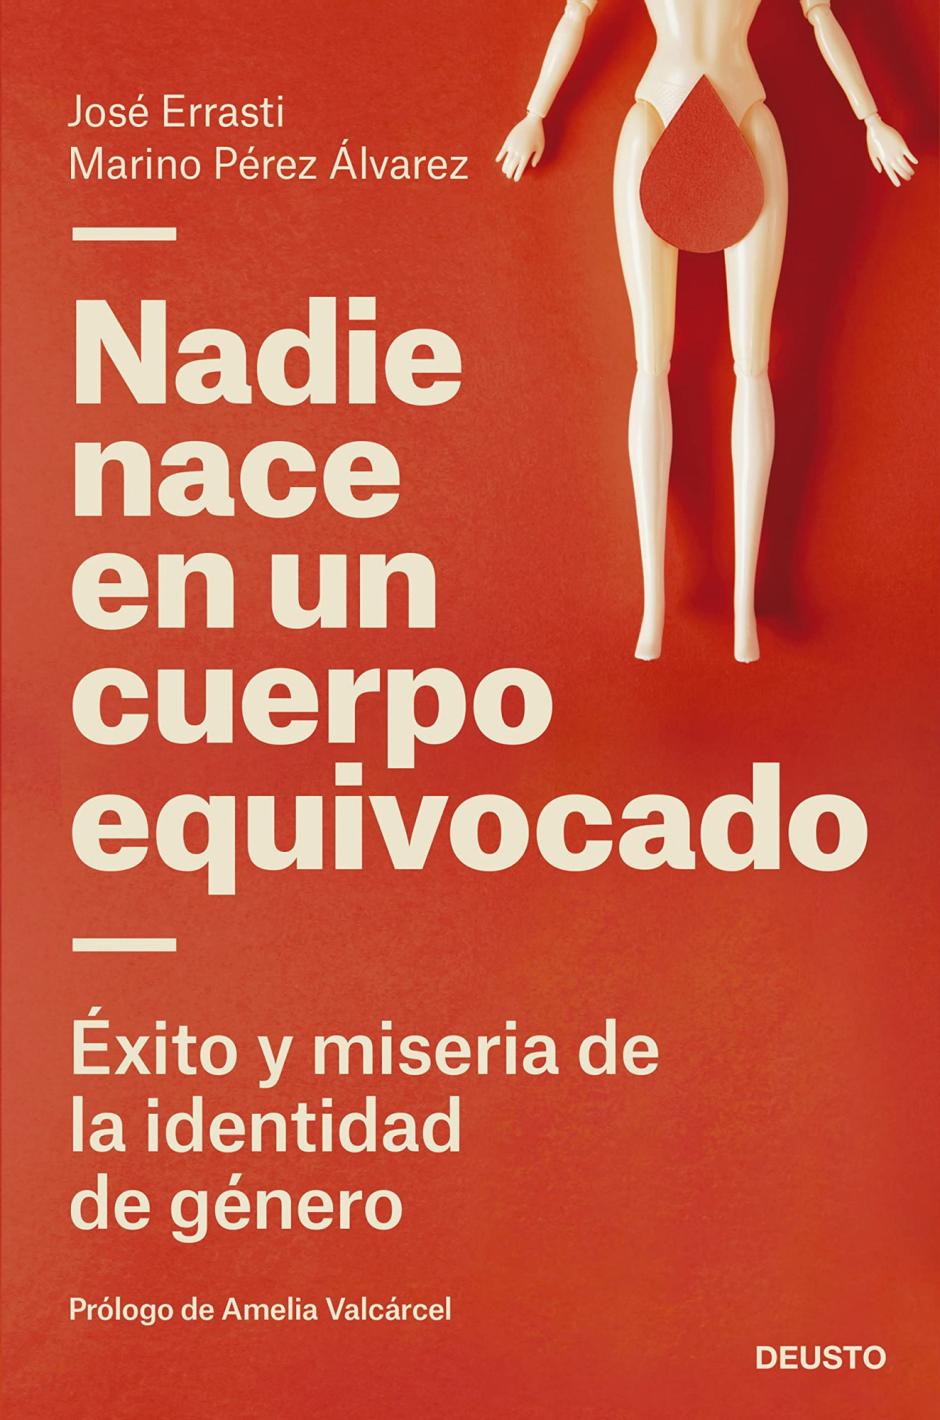 El libro 'Nadie nace en un cuerpo equivocado', de Marino Pérez y José Errasti